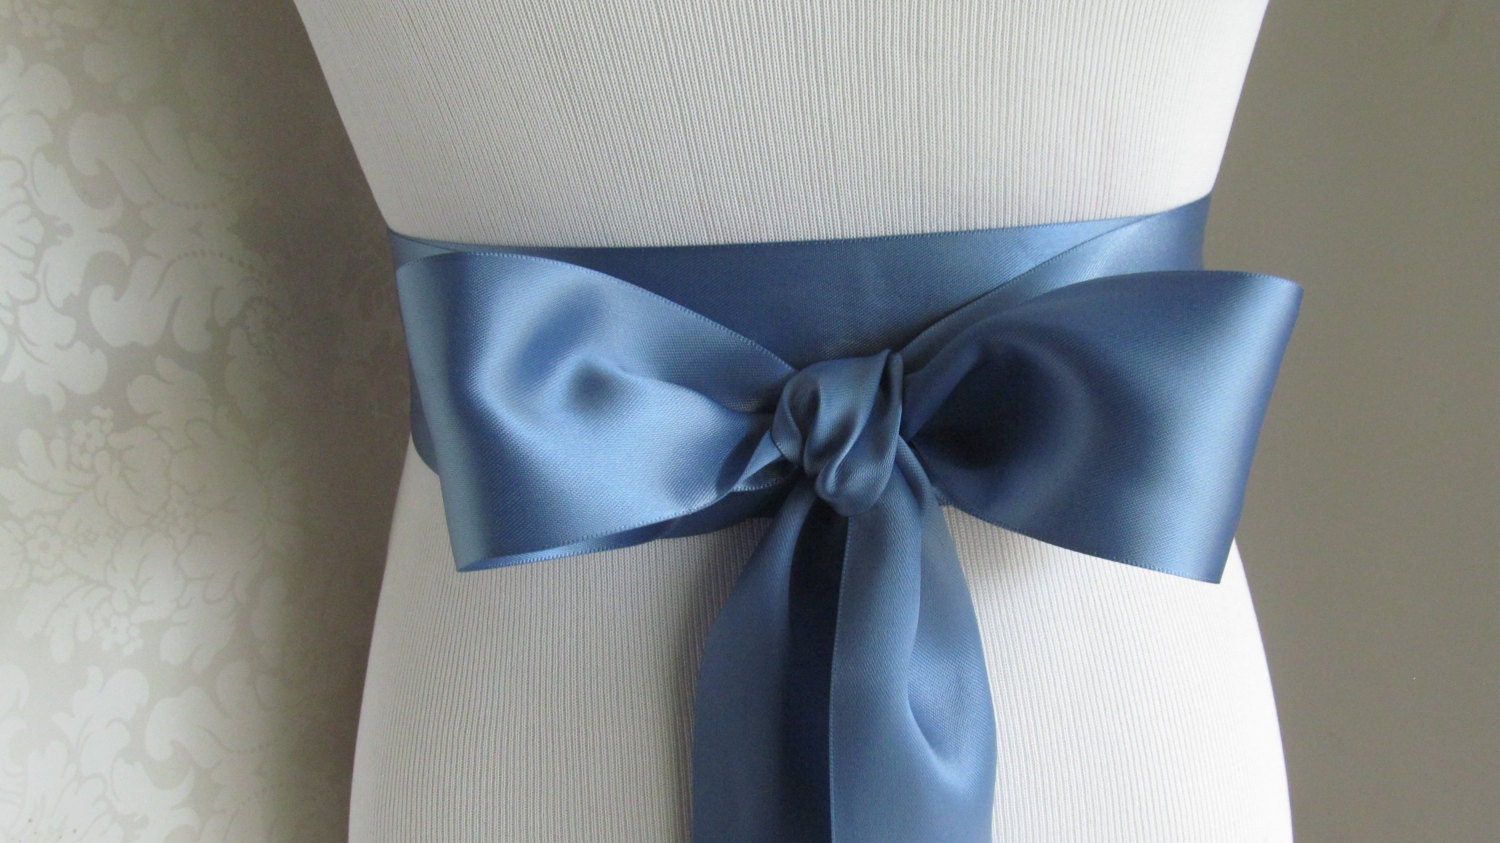 Navy Blue Ribbon, Navy Ribbon, Double Sided Solid Ribbon, Double Face Navy  Blue Wedding Sash, Double Side Satin Ribbon, Double Faced 